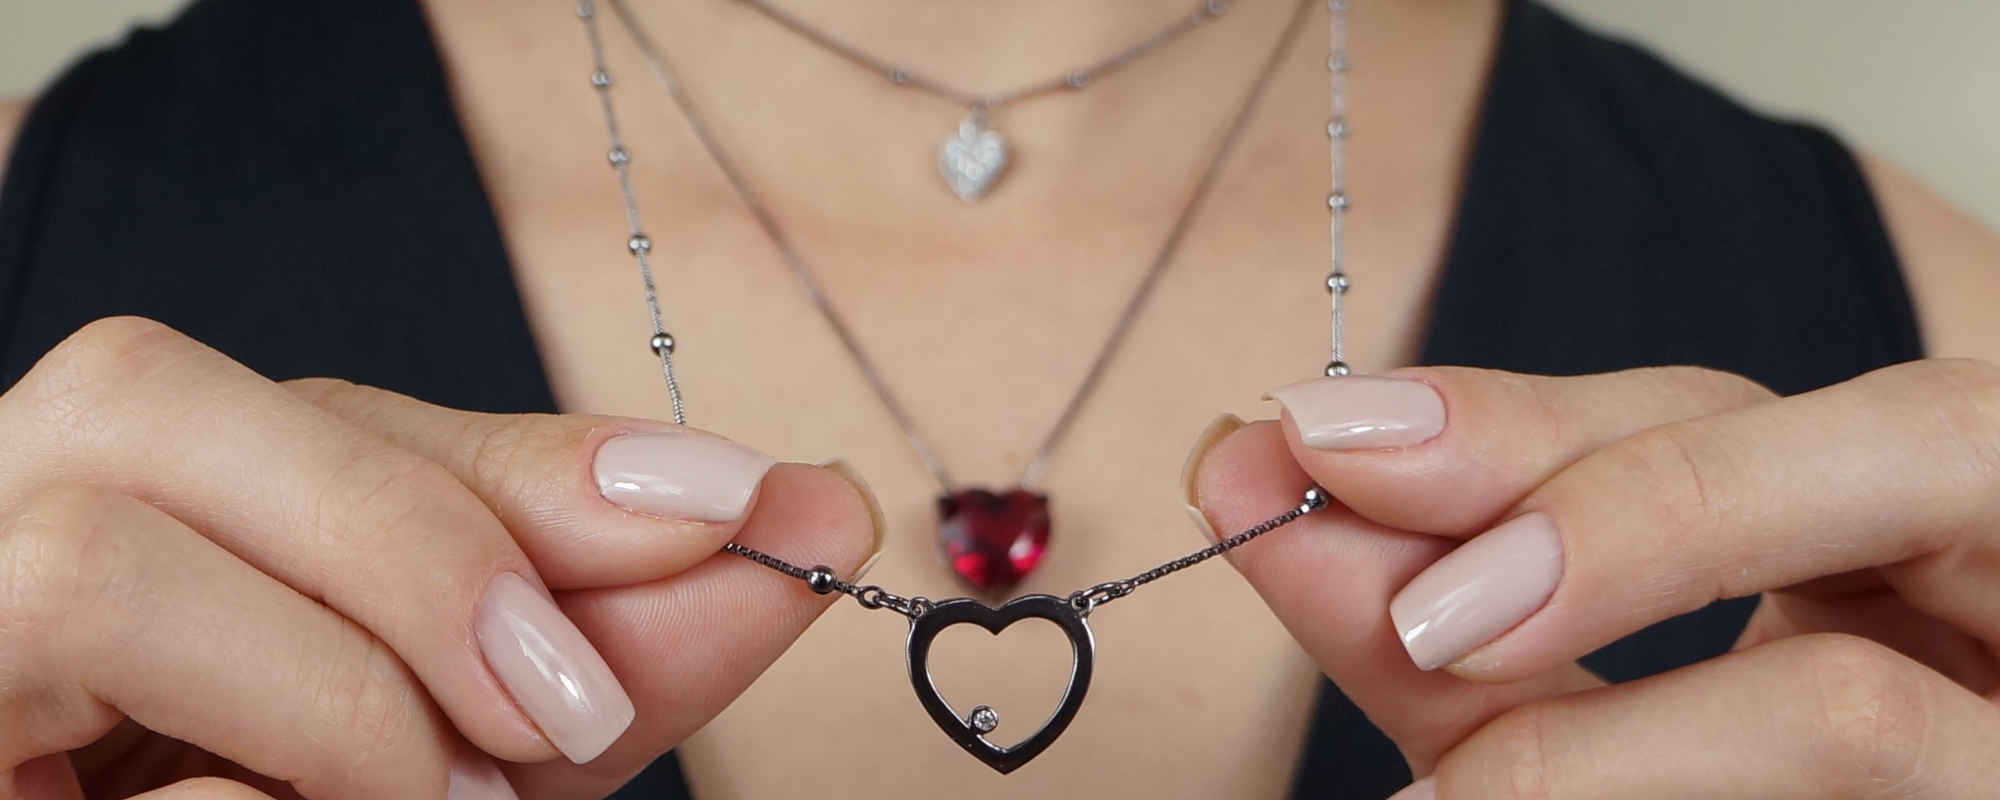 5 modelos de semi joias de coração para amar | Blog da Kitbox